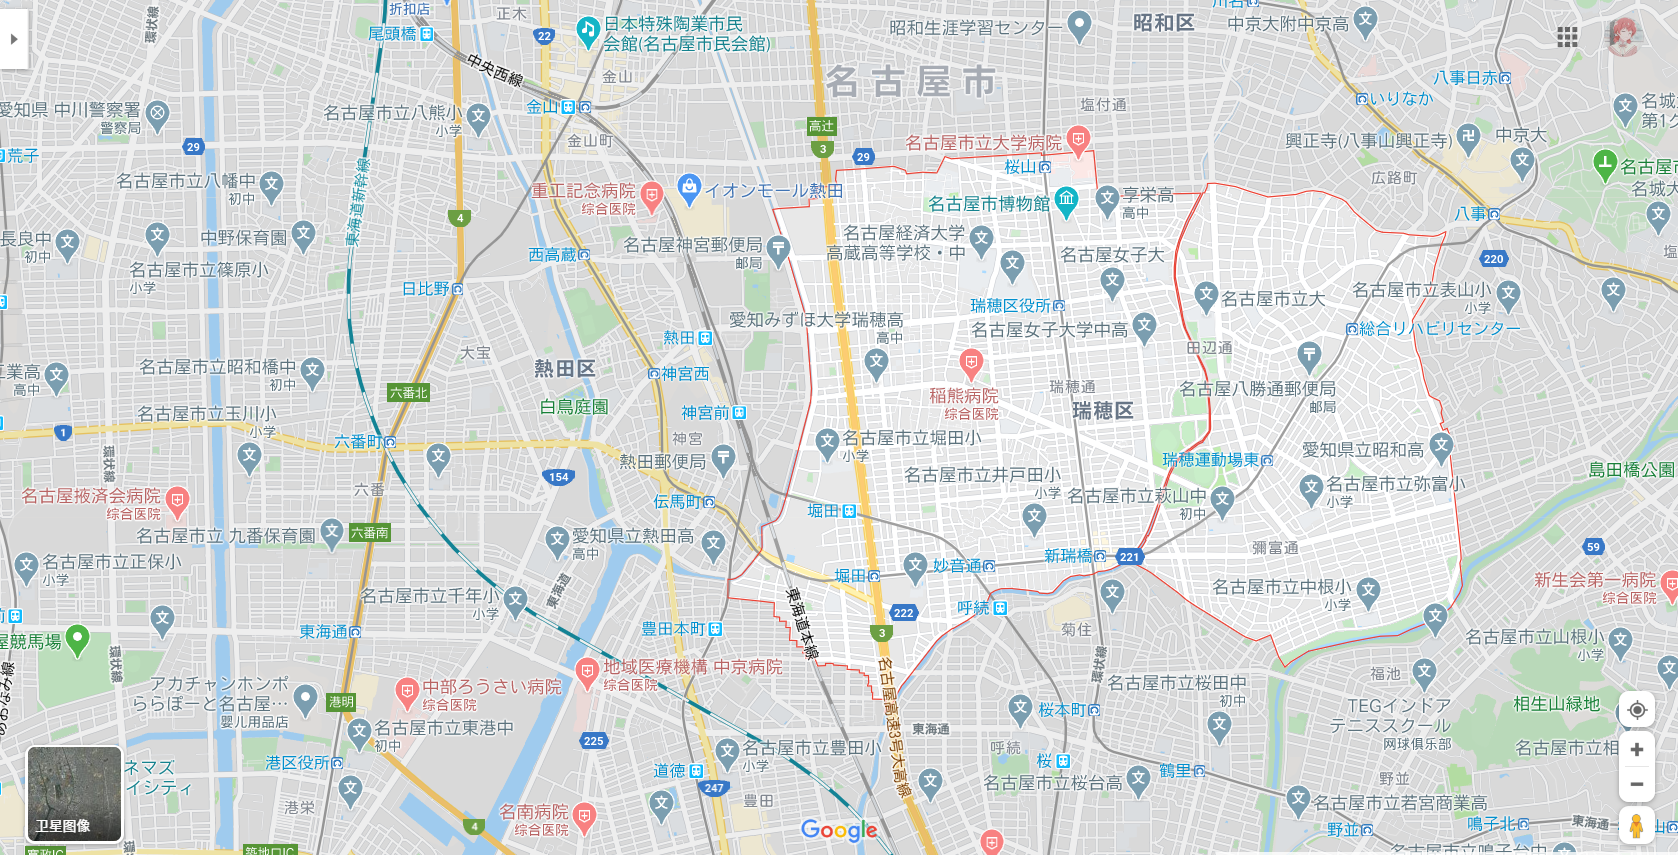 图源自谷歌地图,图片里红色围起来的那块就是爱知县名古屋市瑞穗区